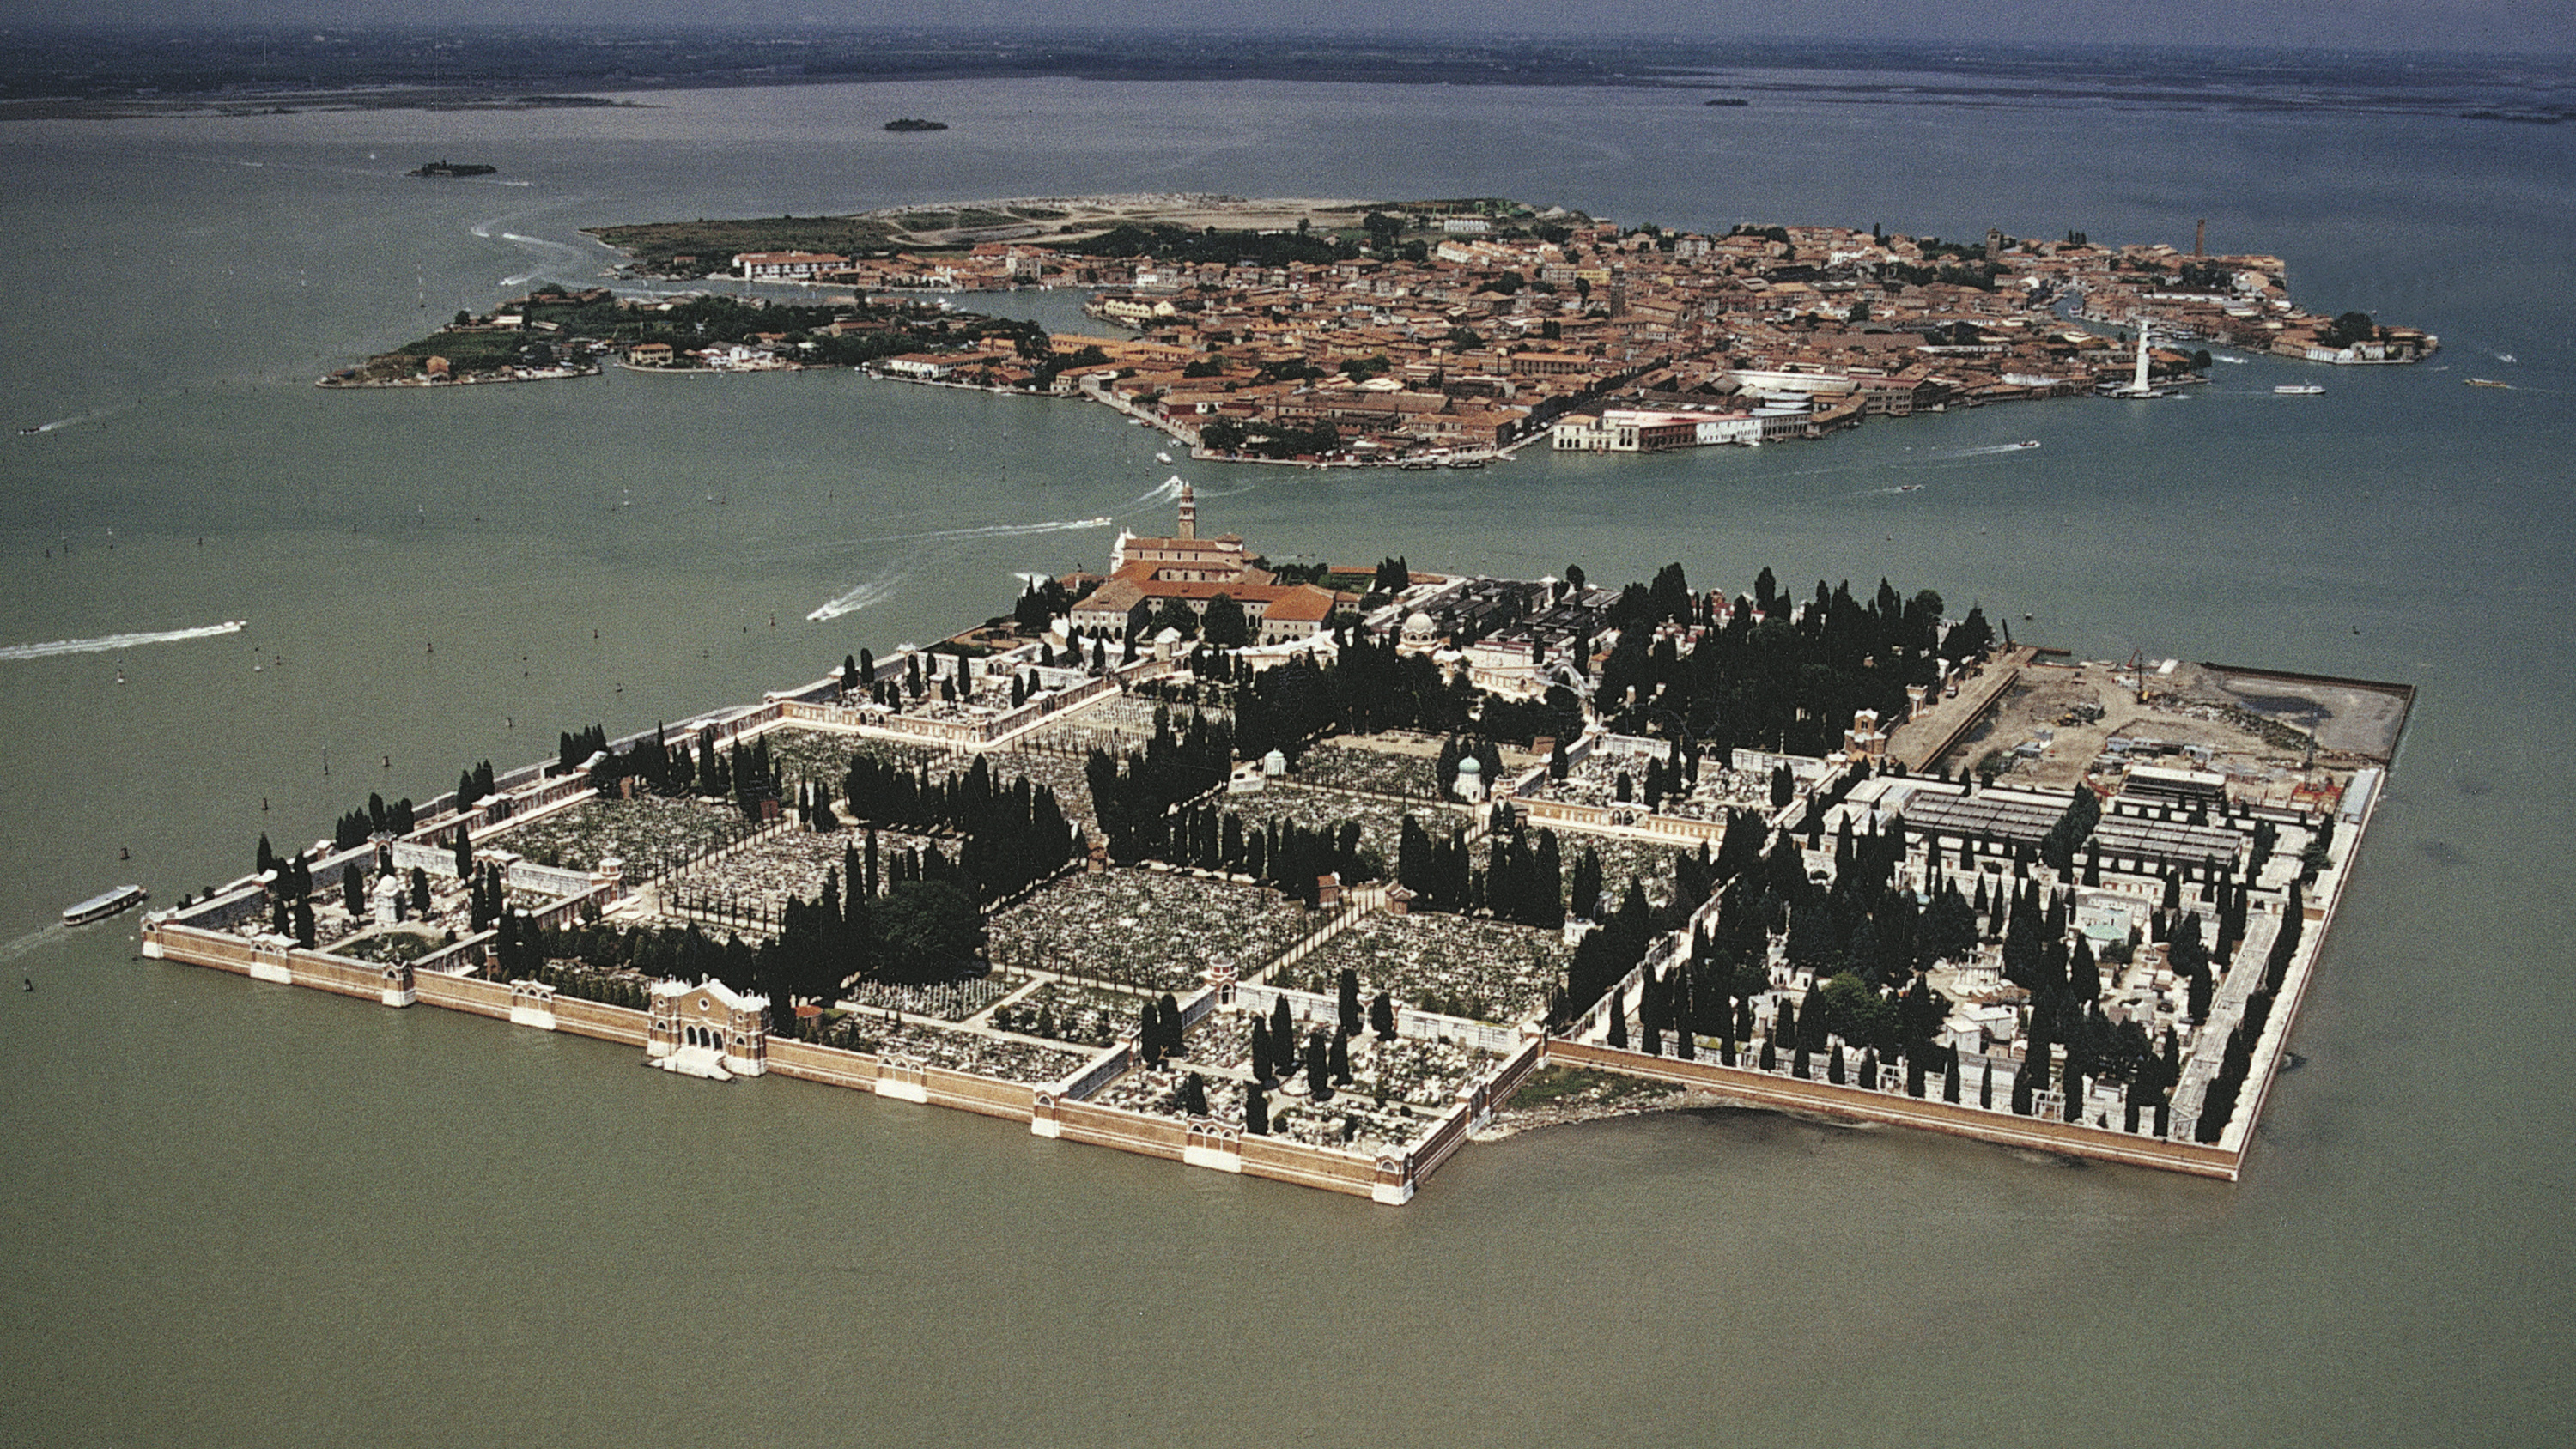 Venice: the Island of Silence